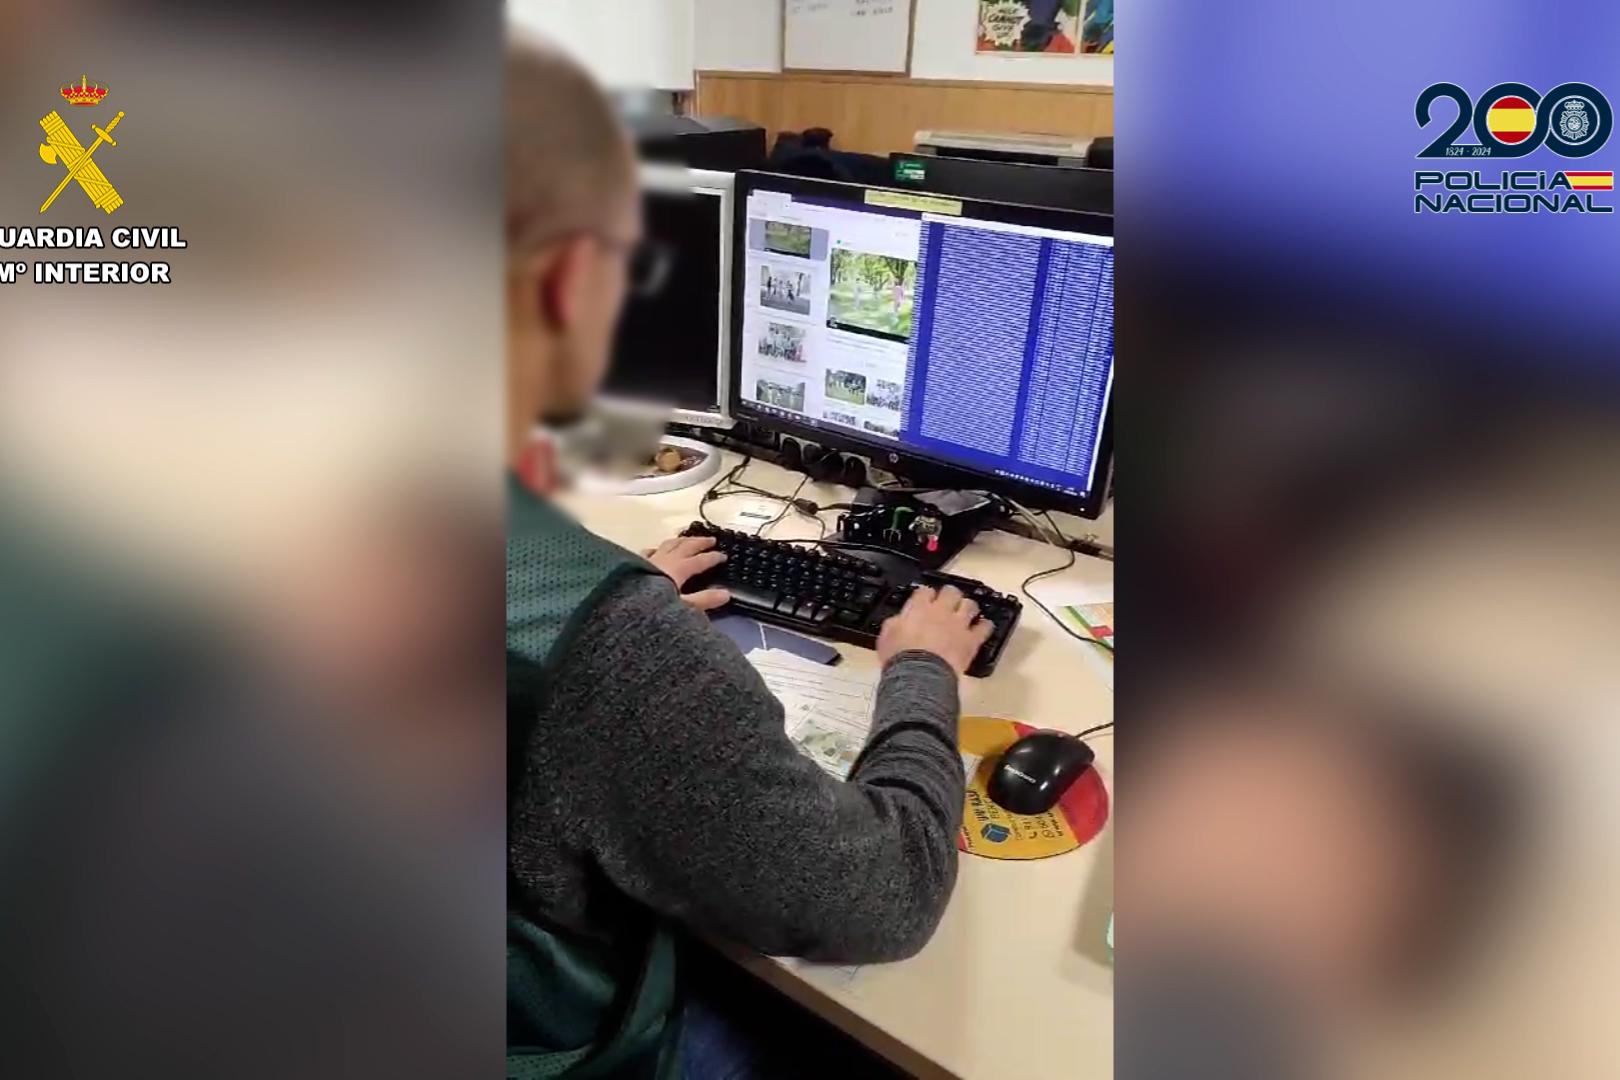 Agente visualizando las imágenes en un ordenador